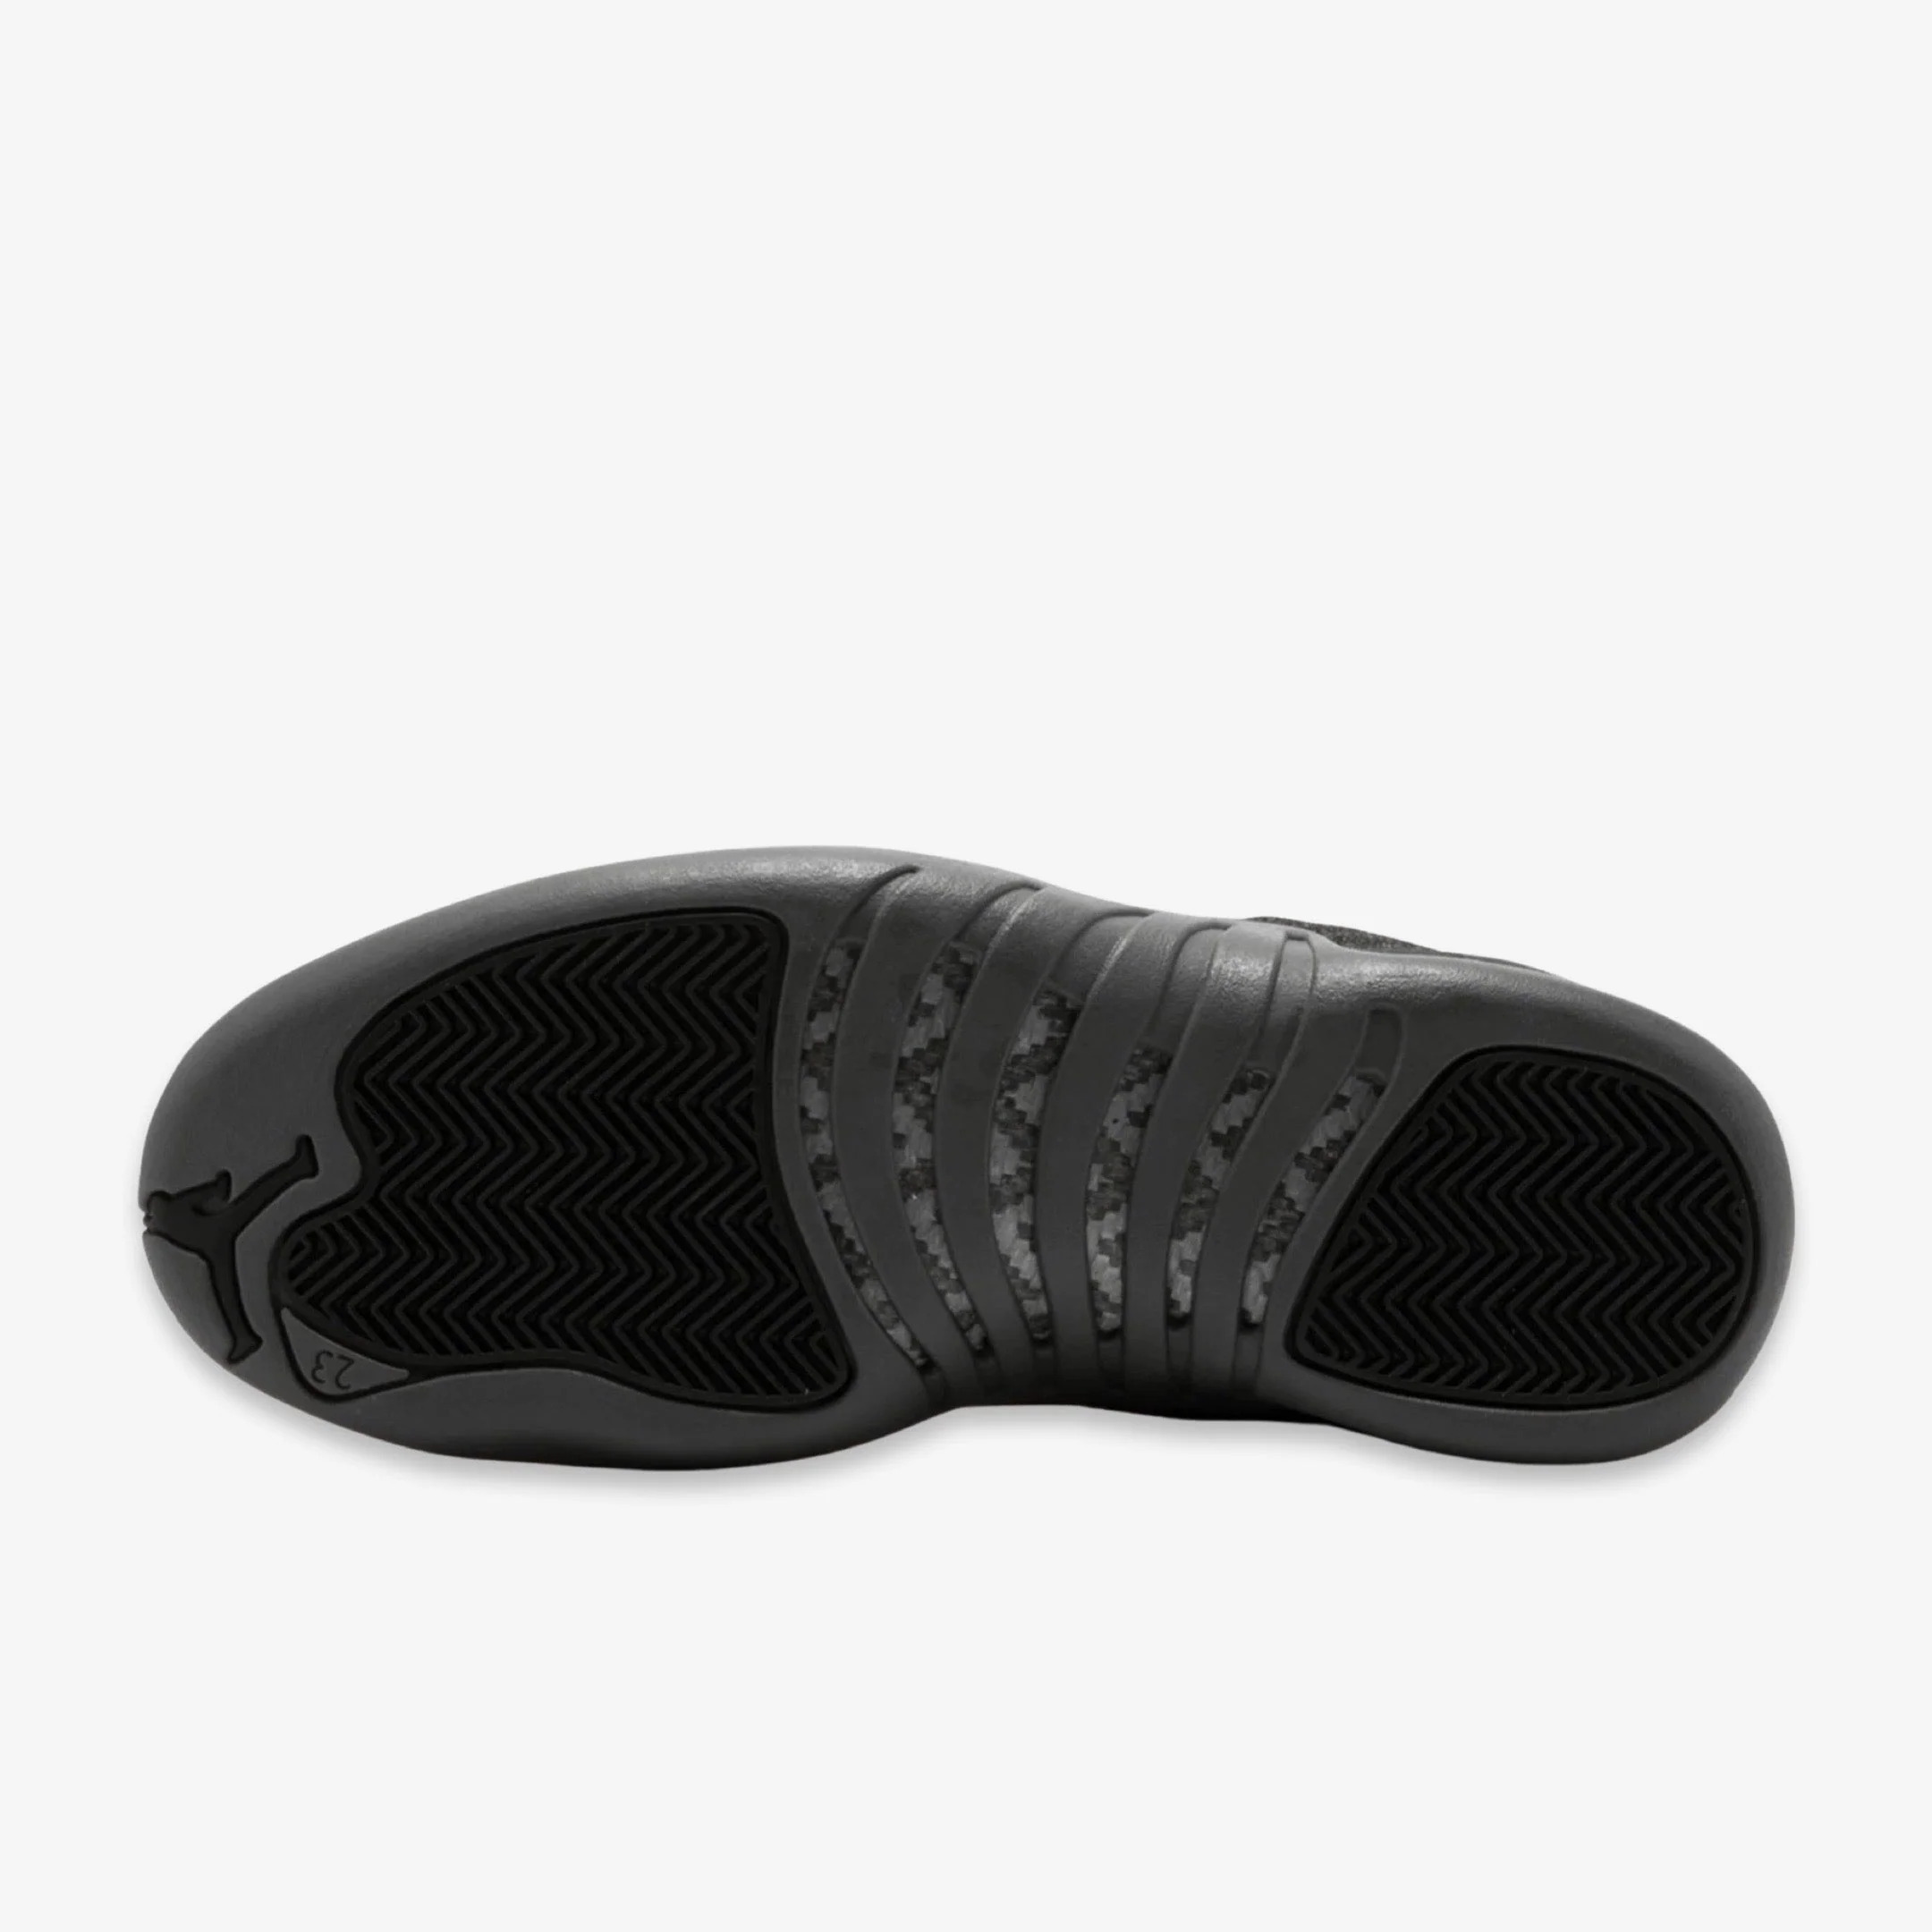 Nike Mens Air Jordan 12 Retro High "Wool" Dark Grey/Metallic Silver 852627-003 - image 3 of 3